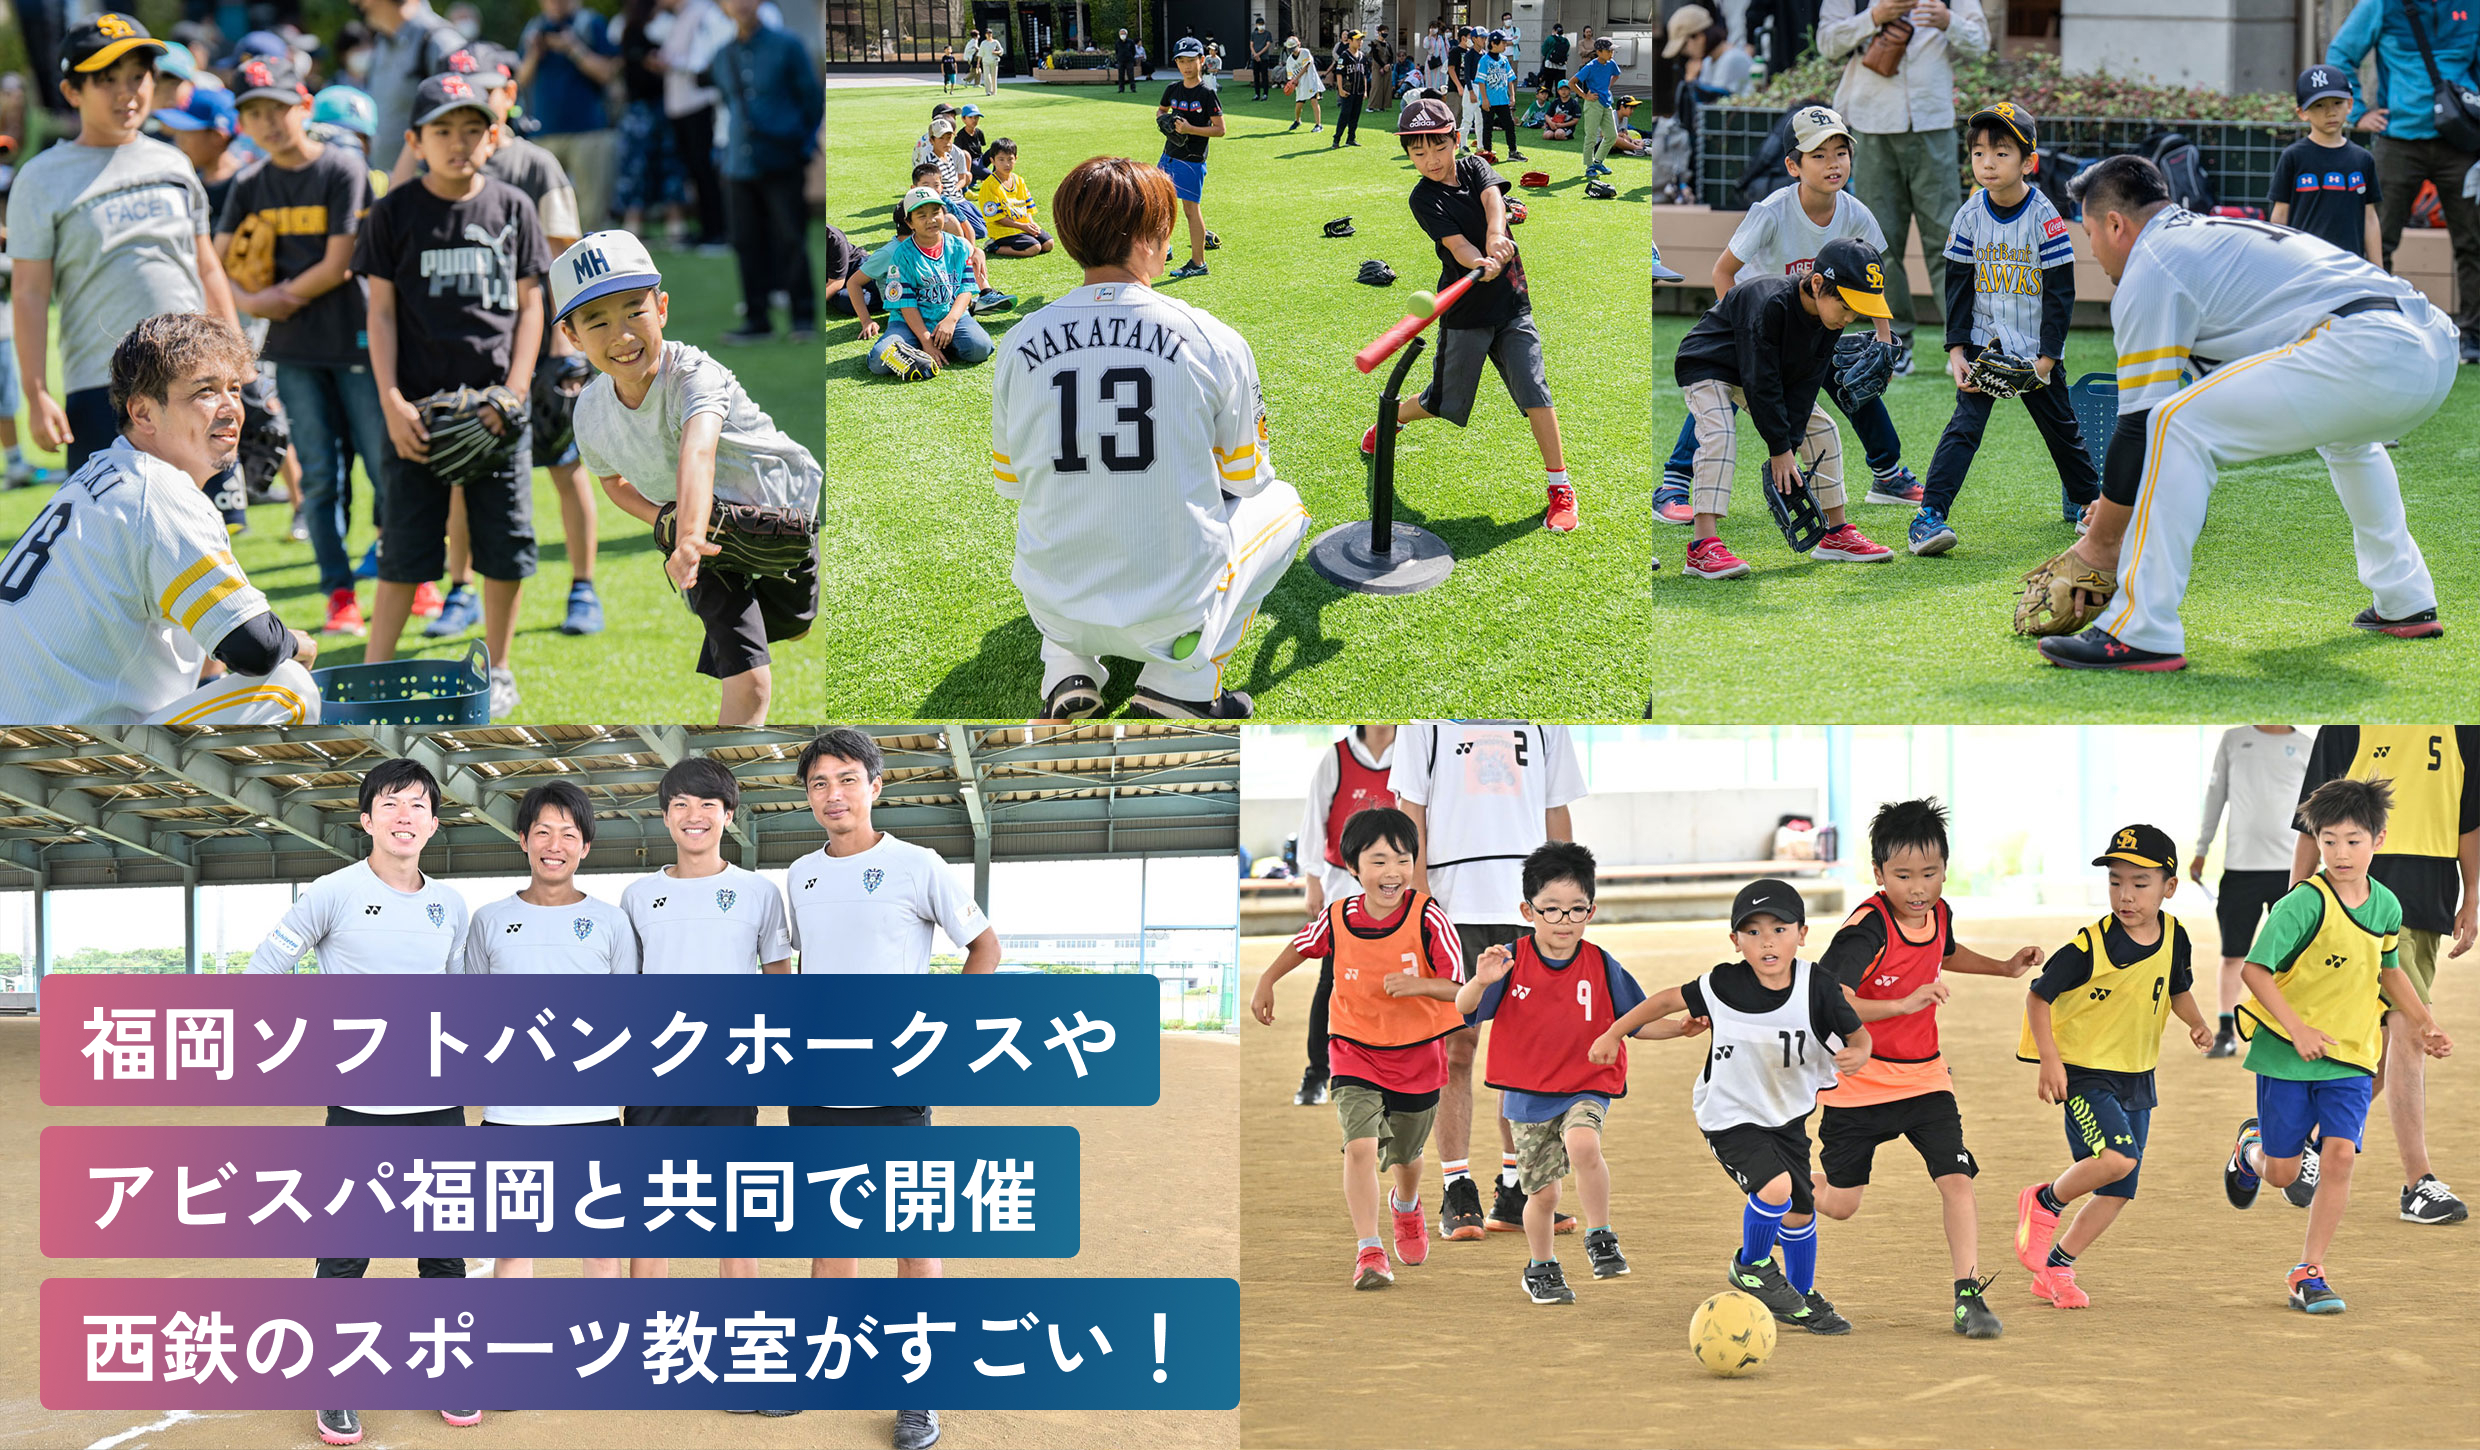 福岡ソフトバンクホークスや
アビスパ福岡と共同で開催
西鉄のスポーツ教室がすごい！